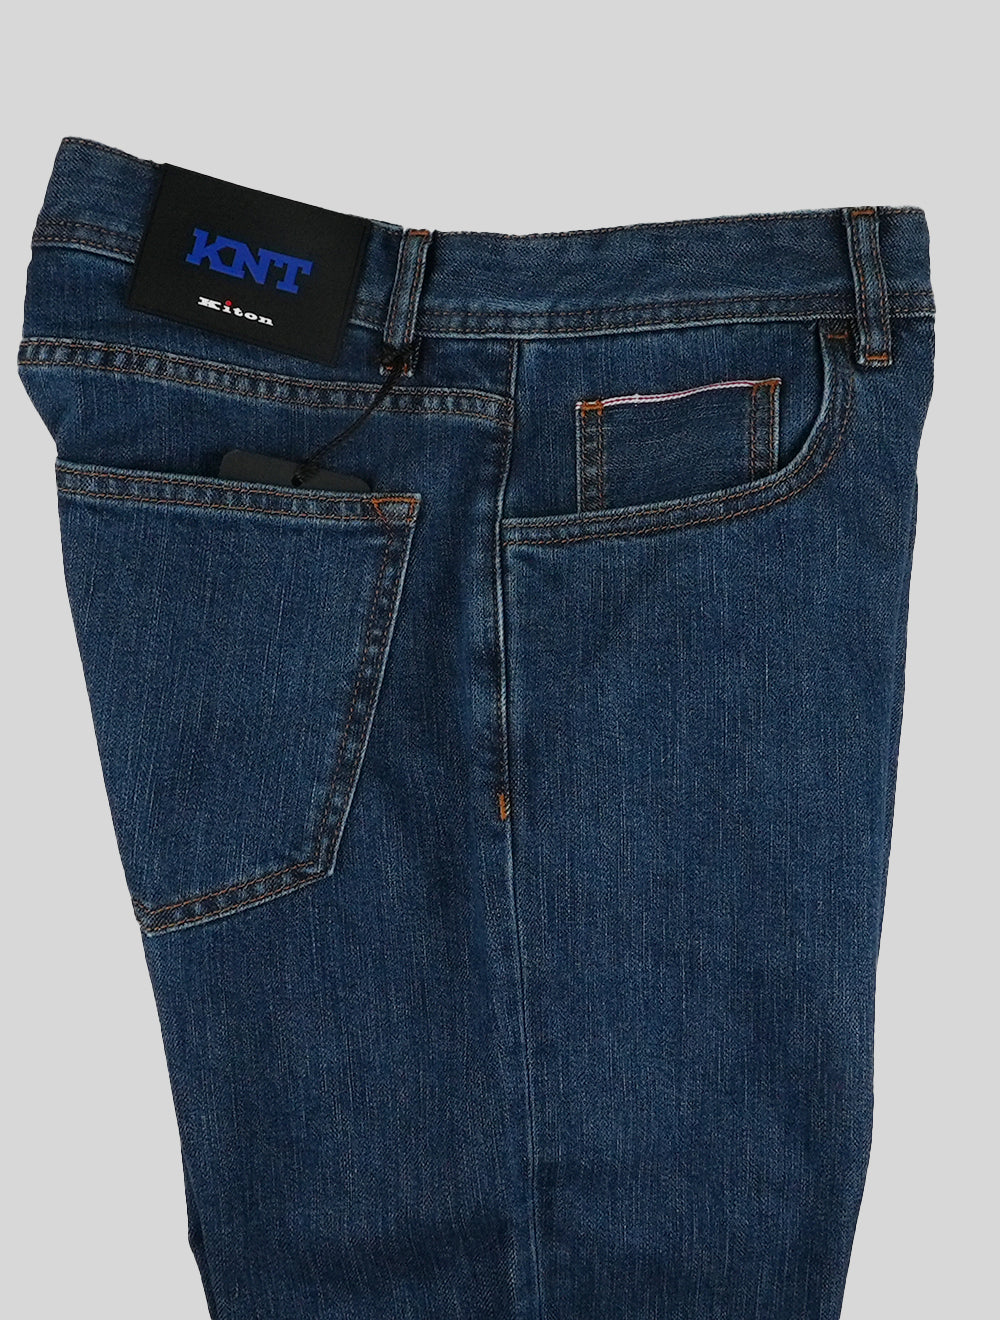 KNT Kiton כחול כותנה Pe ג 'ינס